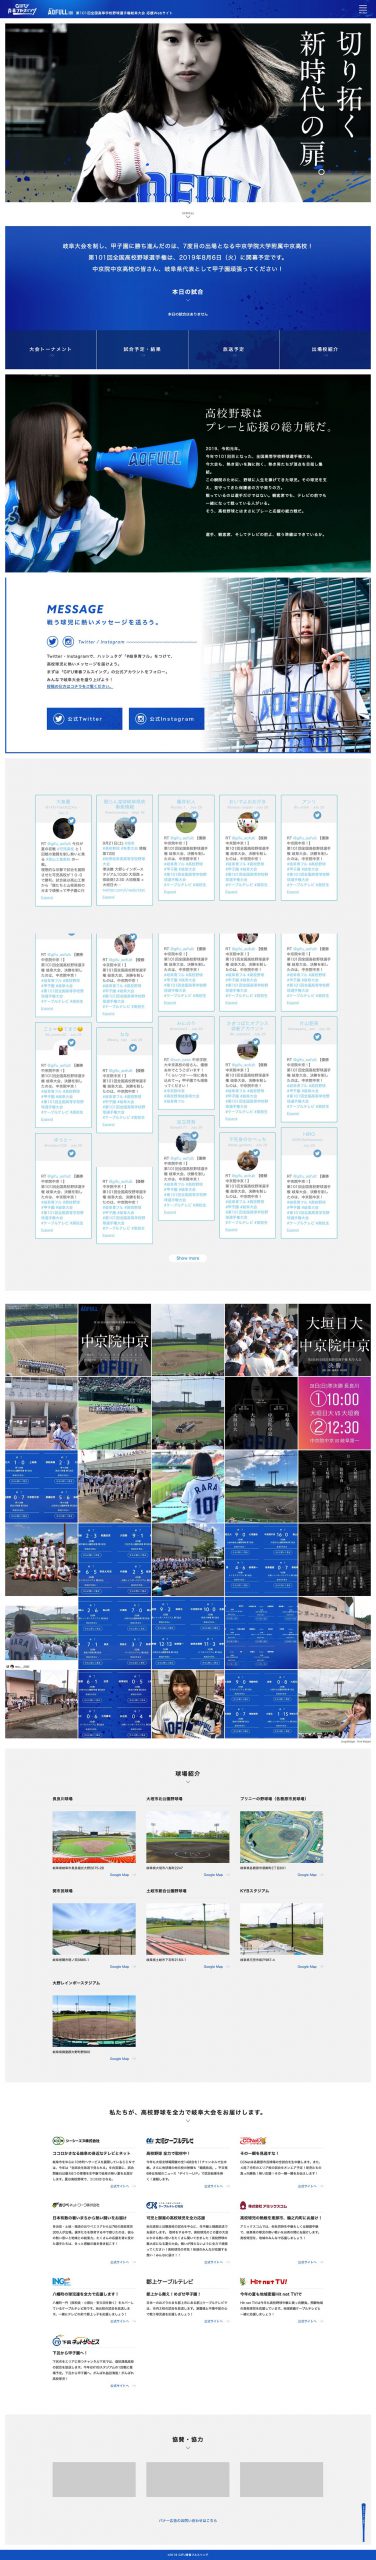 スポーツ ホームページ制作 WEBデザイン参考ギャラリー 岐阜青春フルスイング